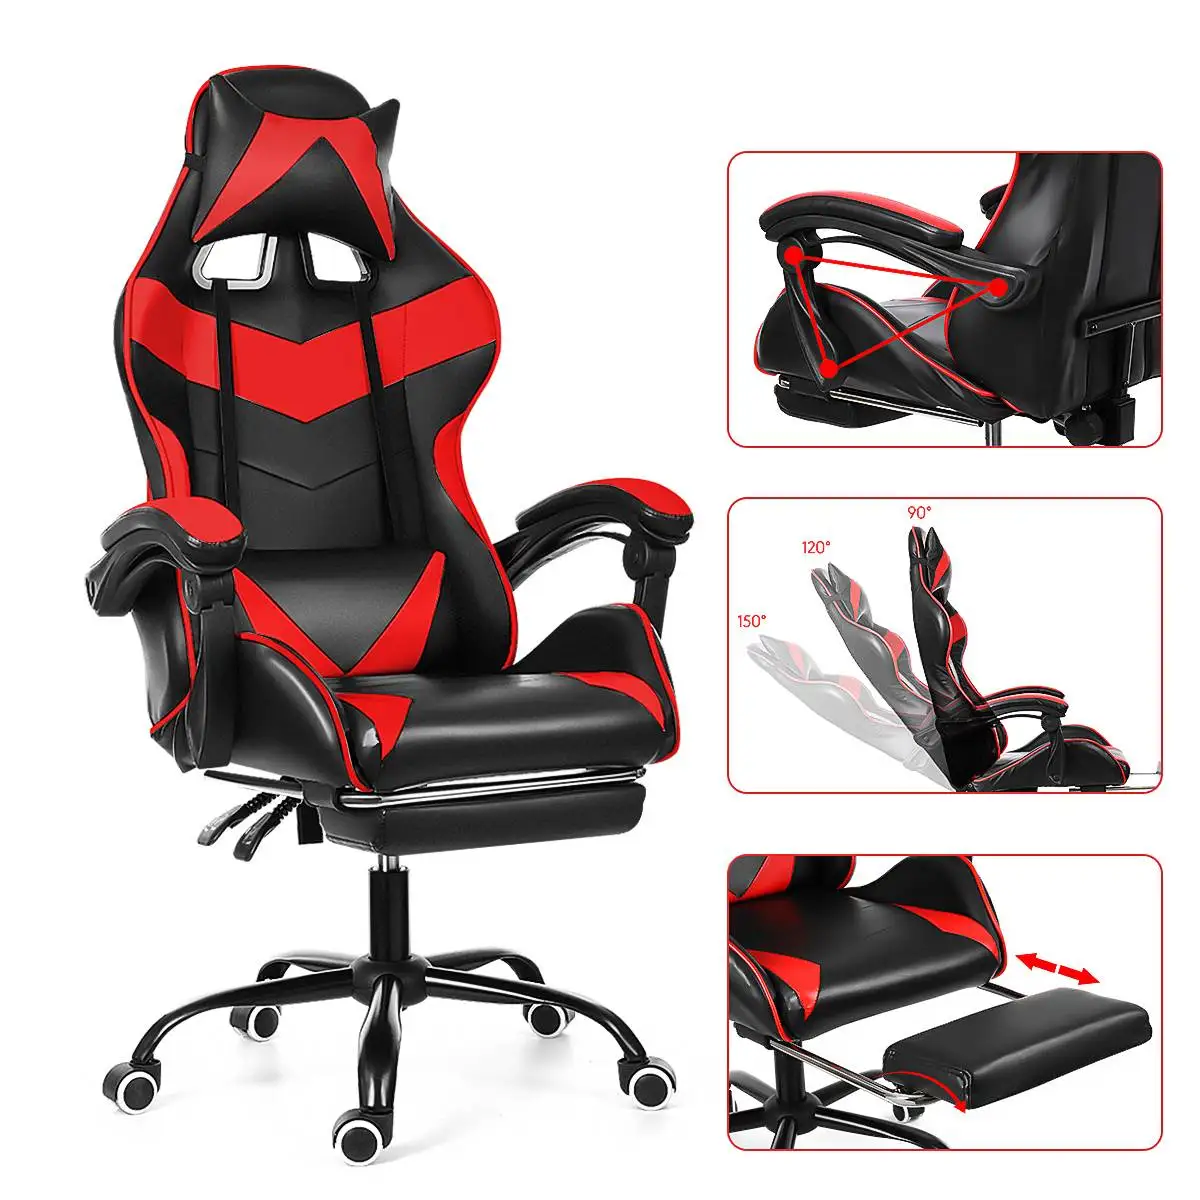 

Офисный игровой стул WCG, игровое кресло для дома, Интернет-кафе, эргономичное компьютерное офисное кресло с поворотным механизмом и подъемн...